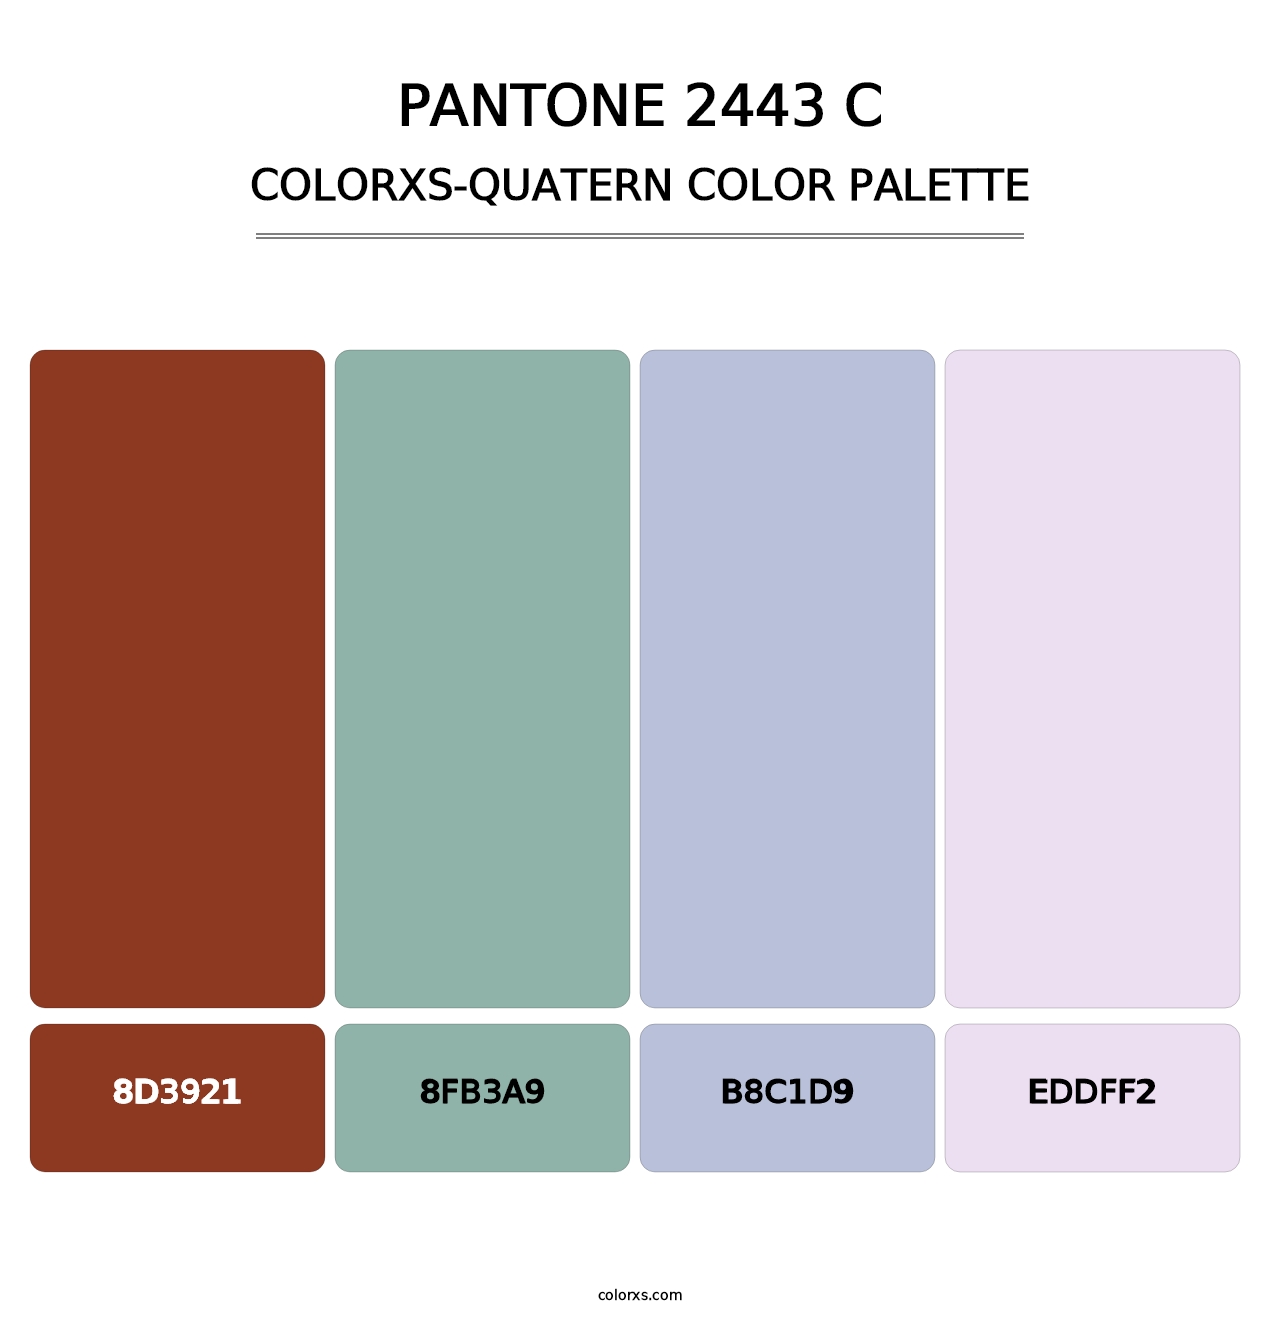 PANTONE 2443 C - Colorxs Quatern Palette